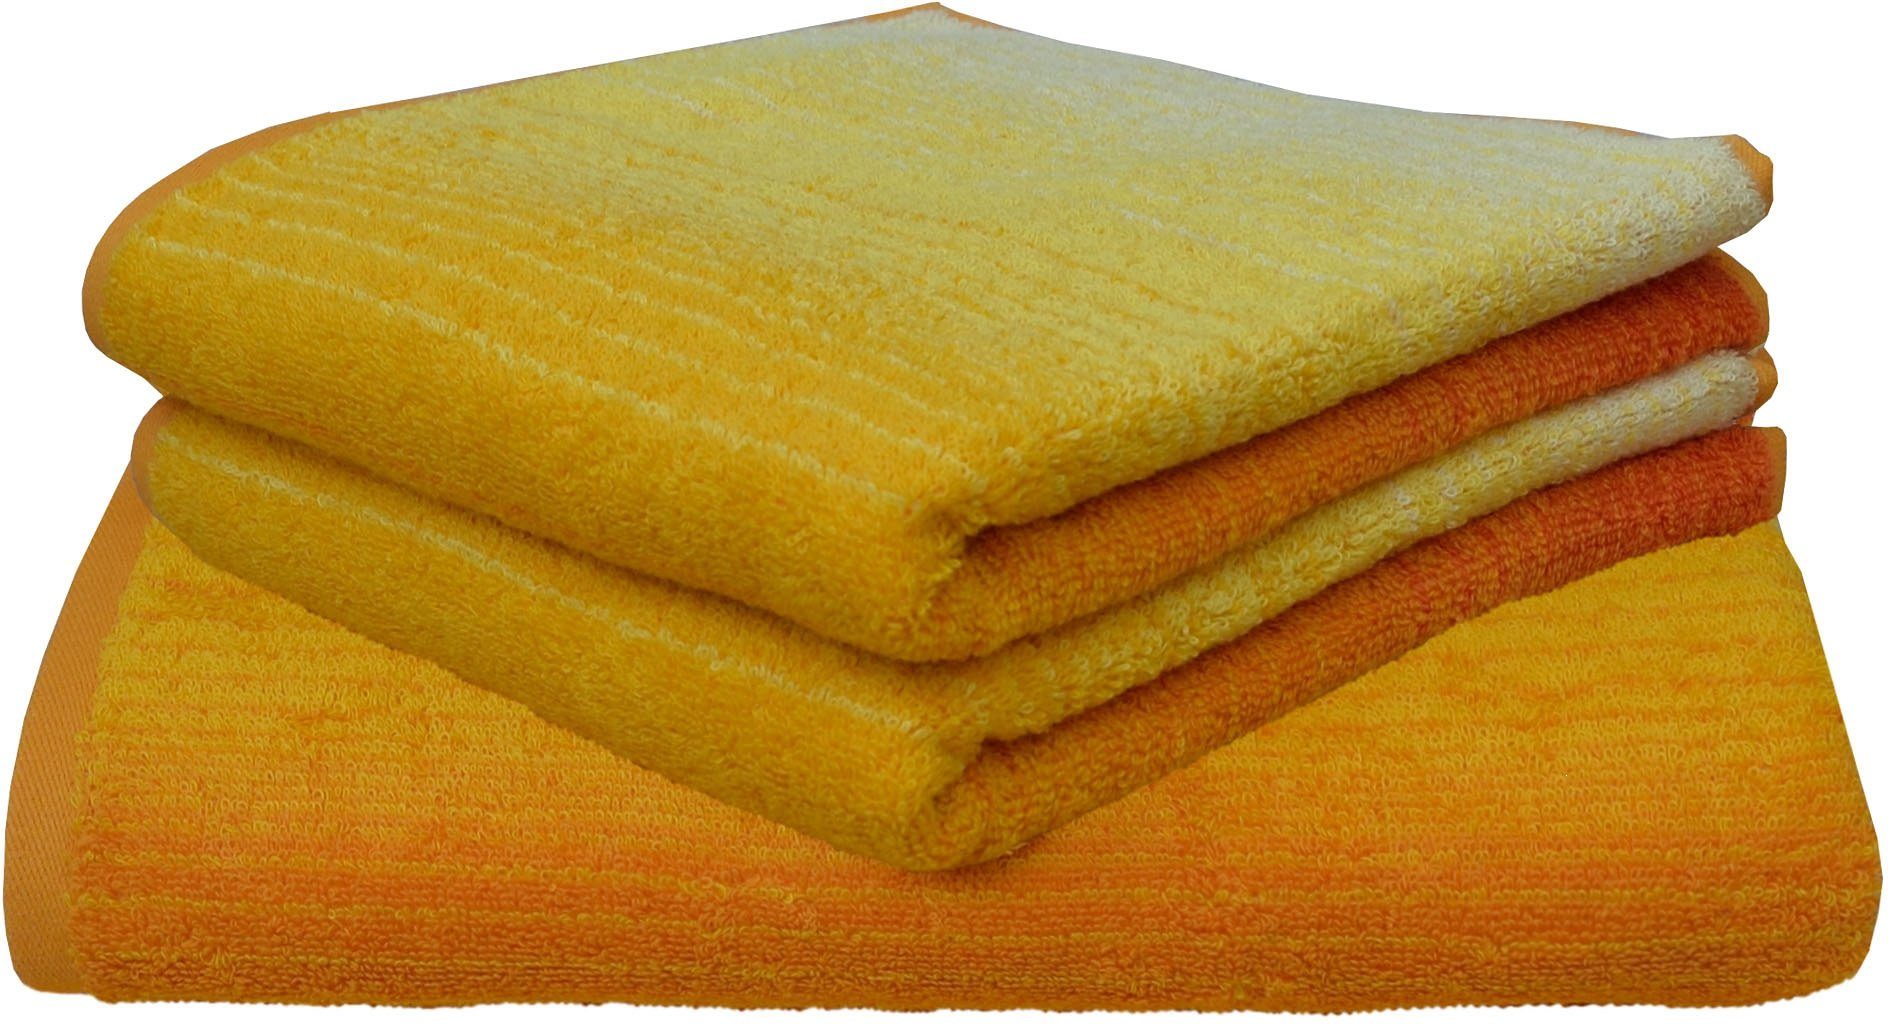 Handtuch gelb Baumwolle gelb HPI 160003660 gelb BL 50x100 cm 